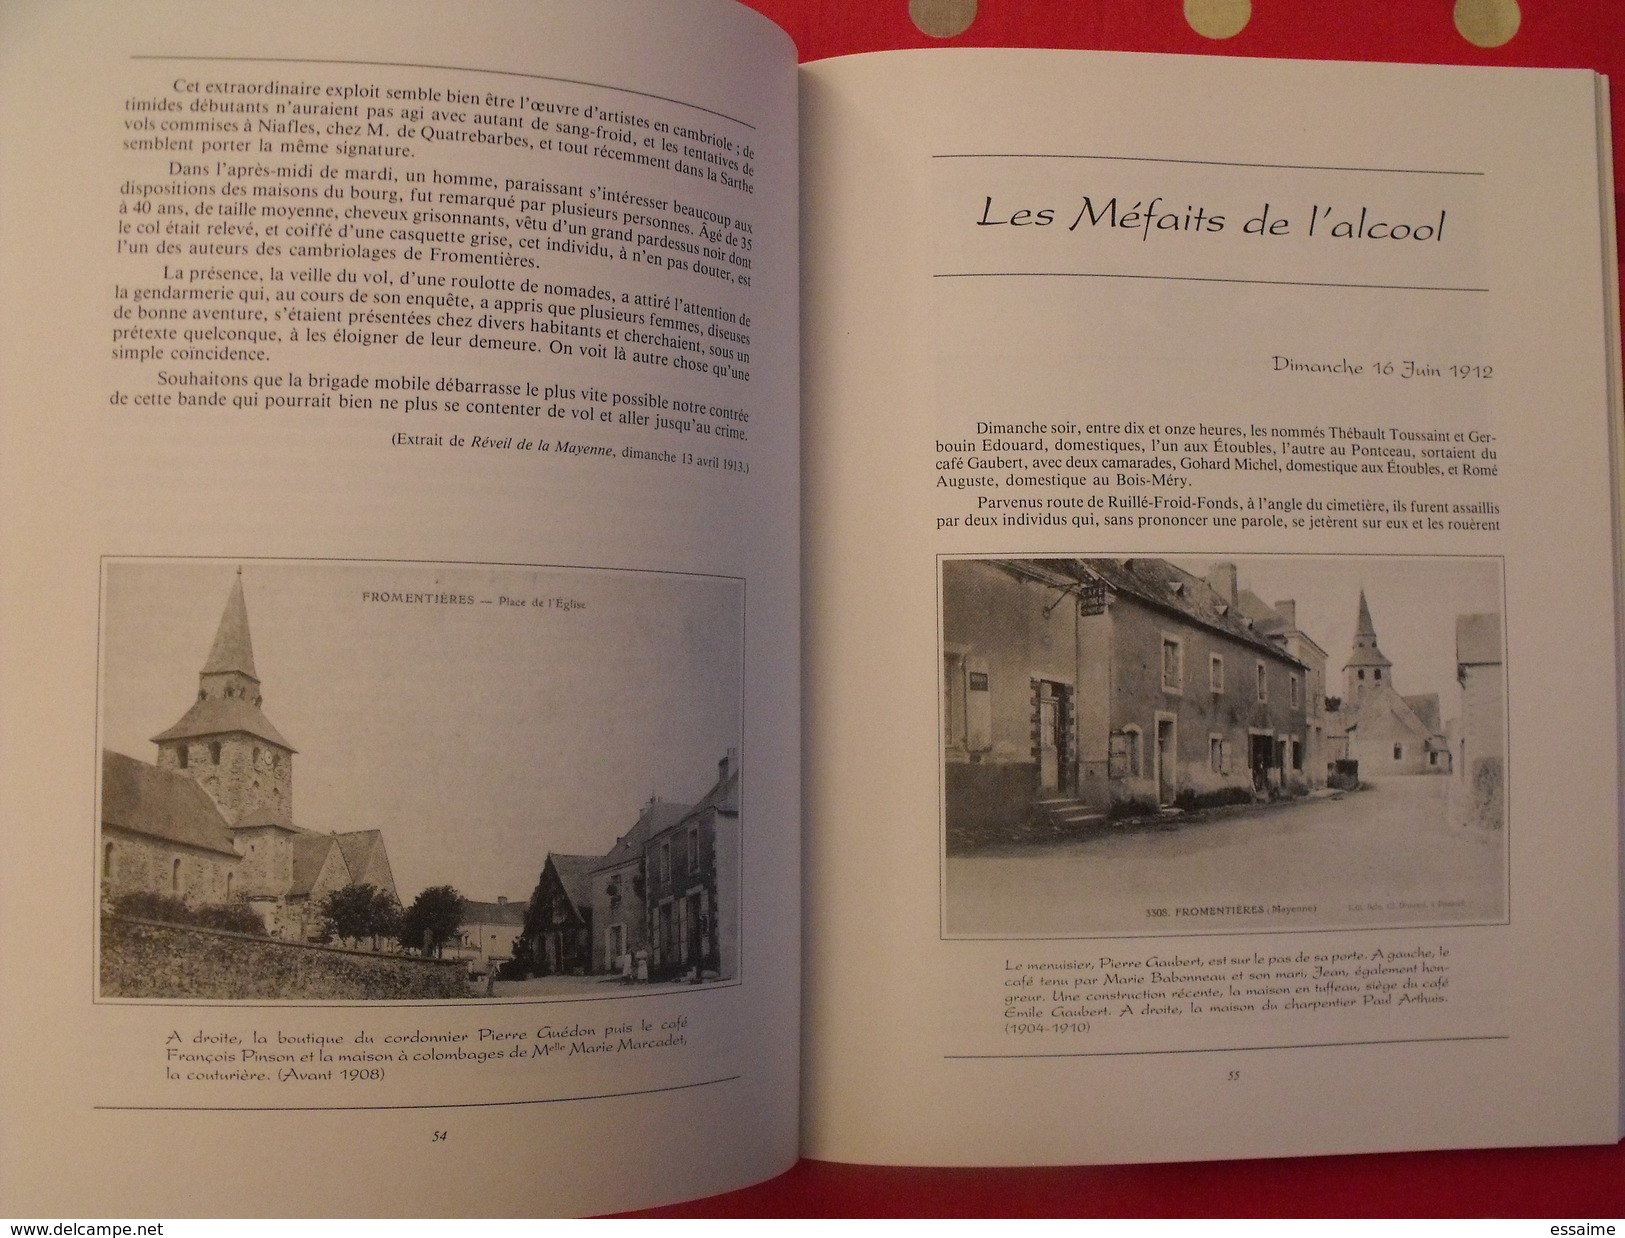 chroniques de mon village : Fromentières. Mayenne. Paul Boisseau, instituteur. éditions Siloë 1987 Laval